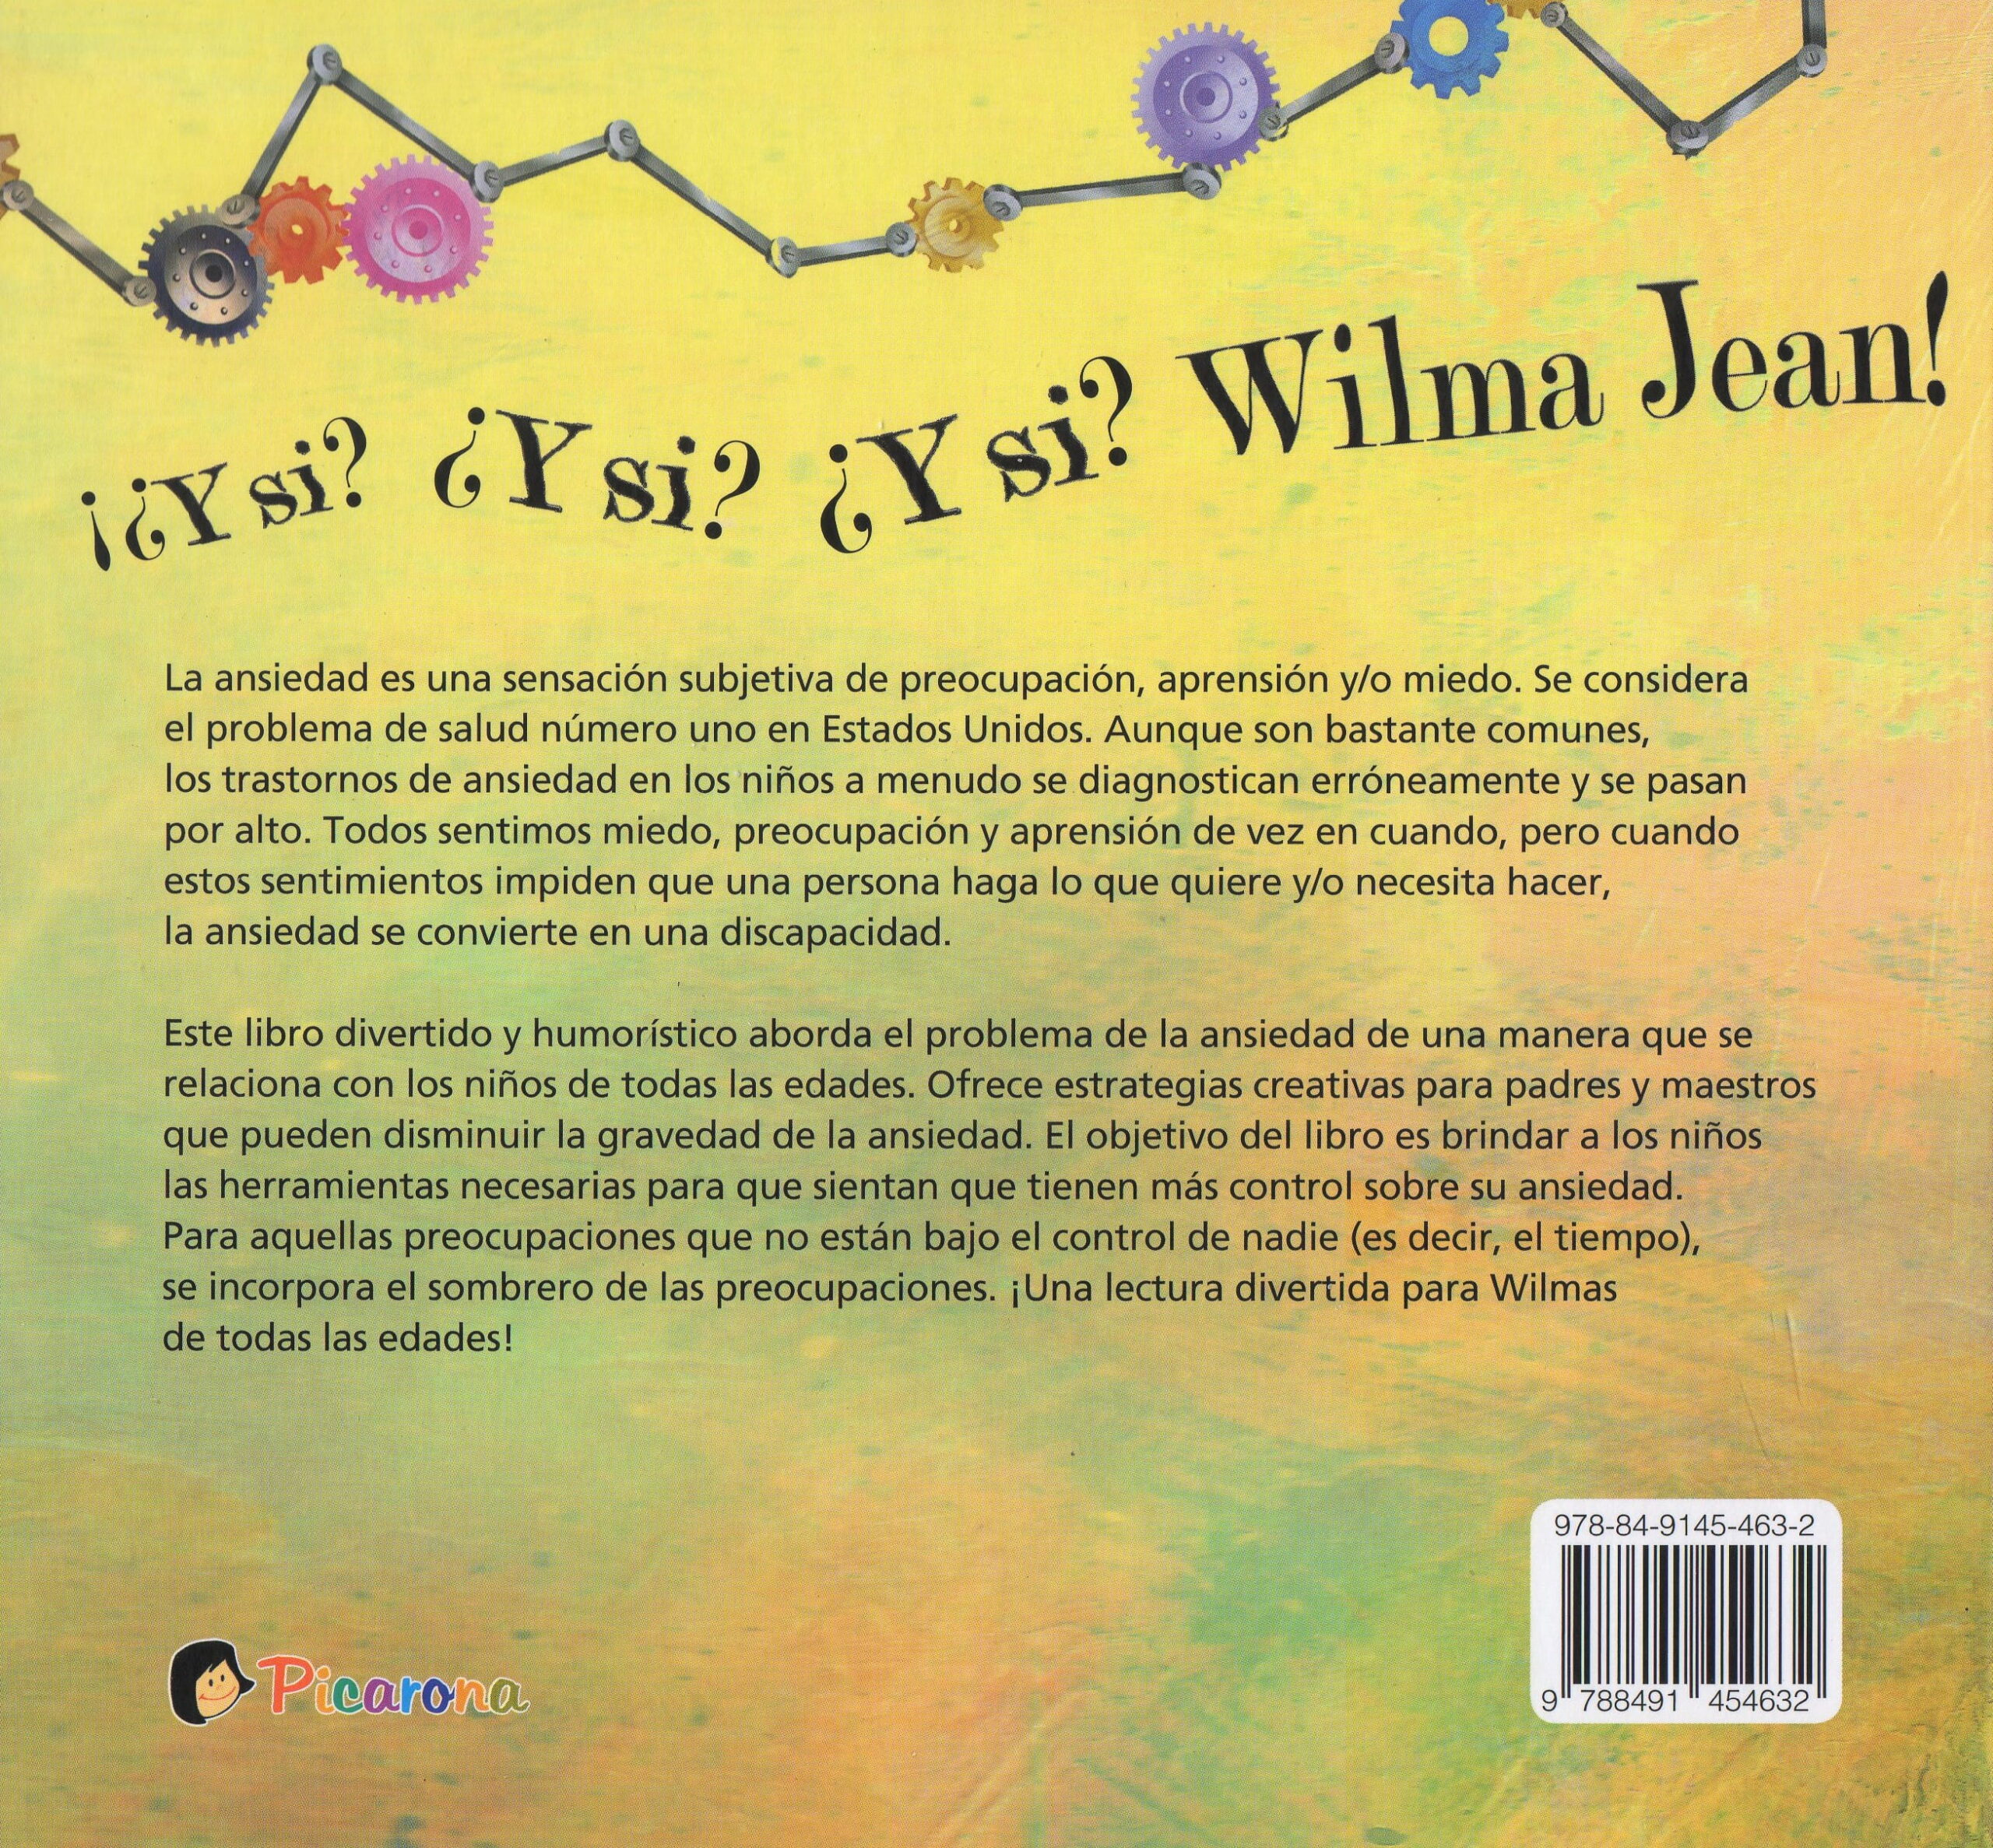 Wilma Jean y la máquina de preocupación CONTRAPORTADA720